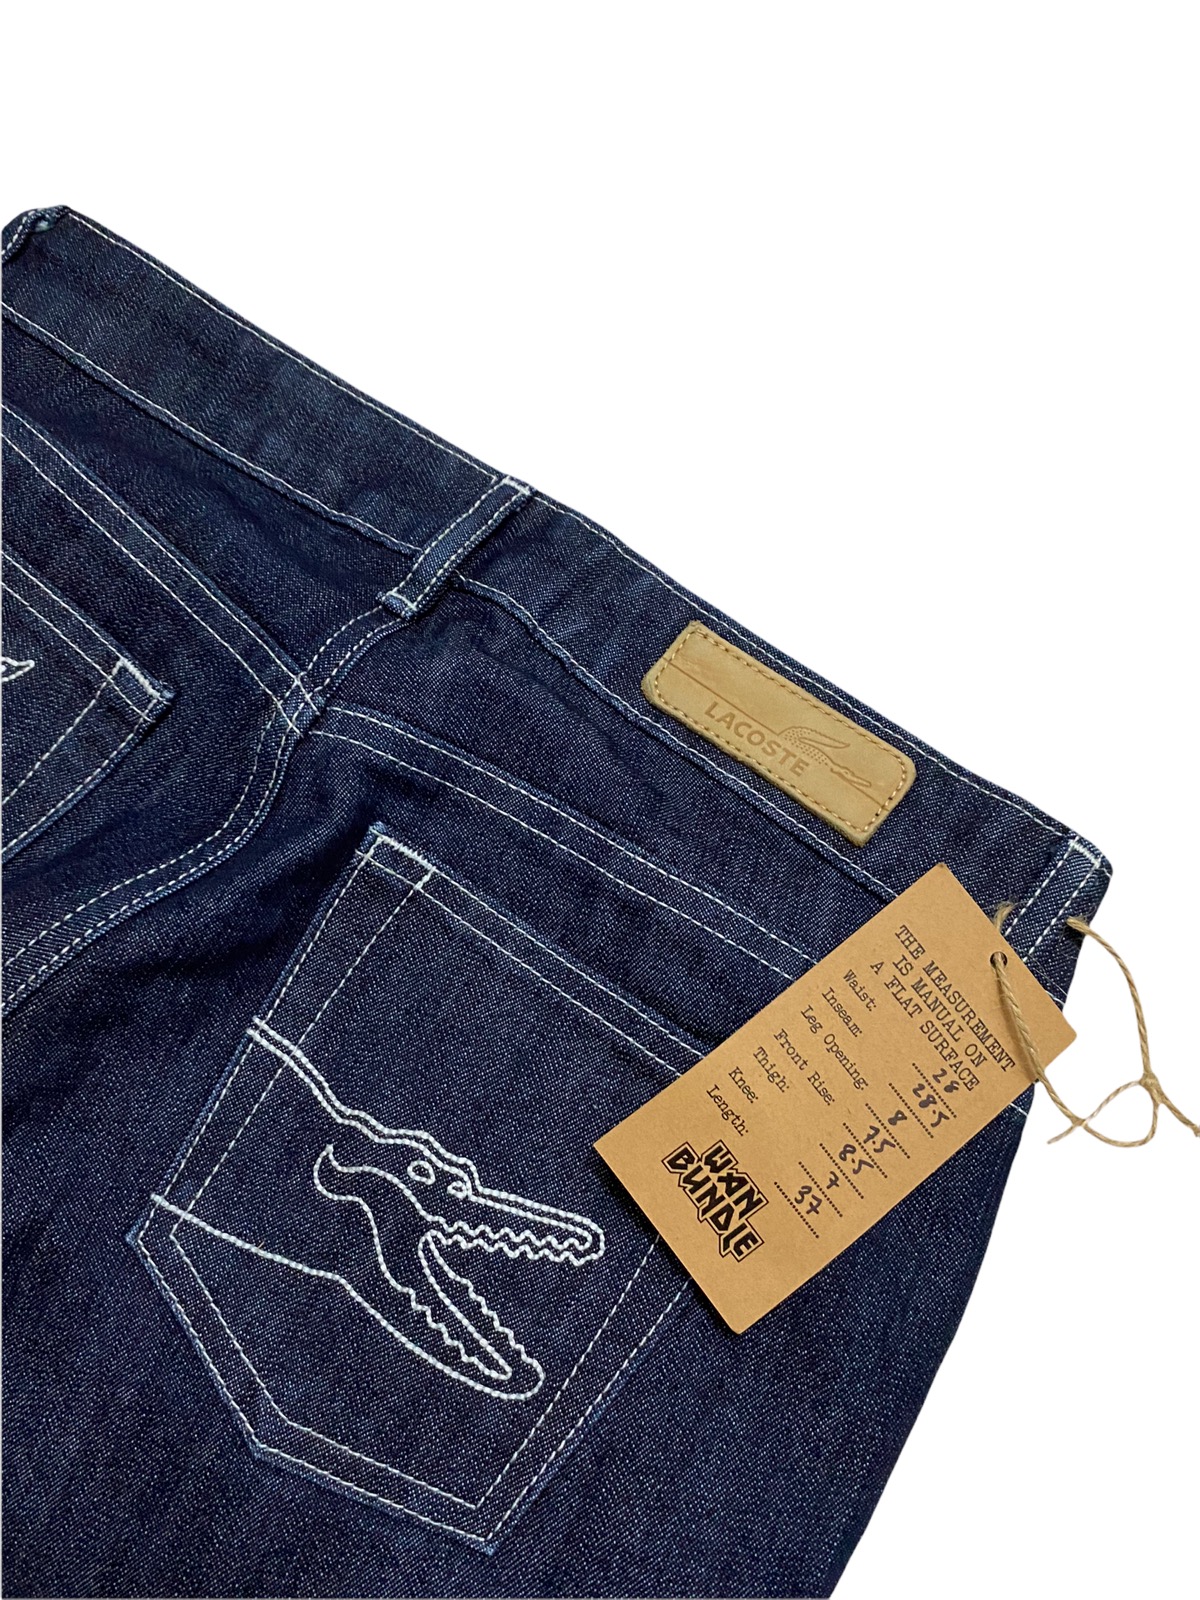 Women Lacoste Jeans Denim Made in Japan - 5